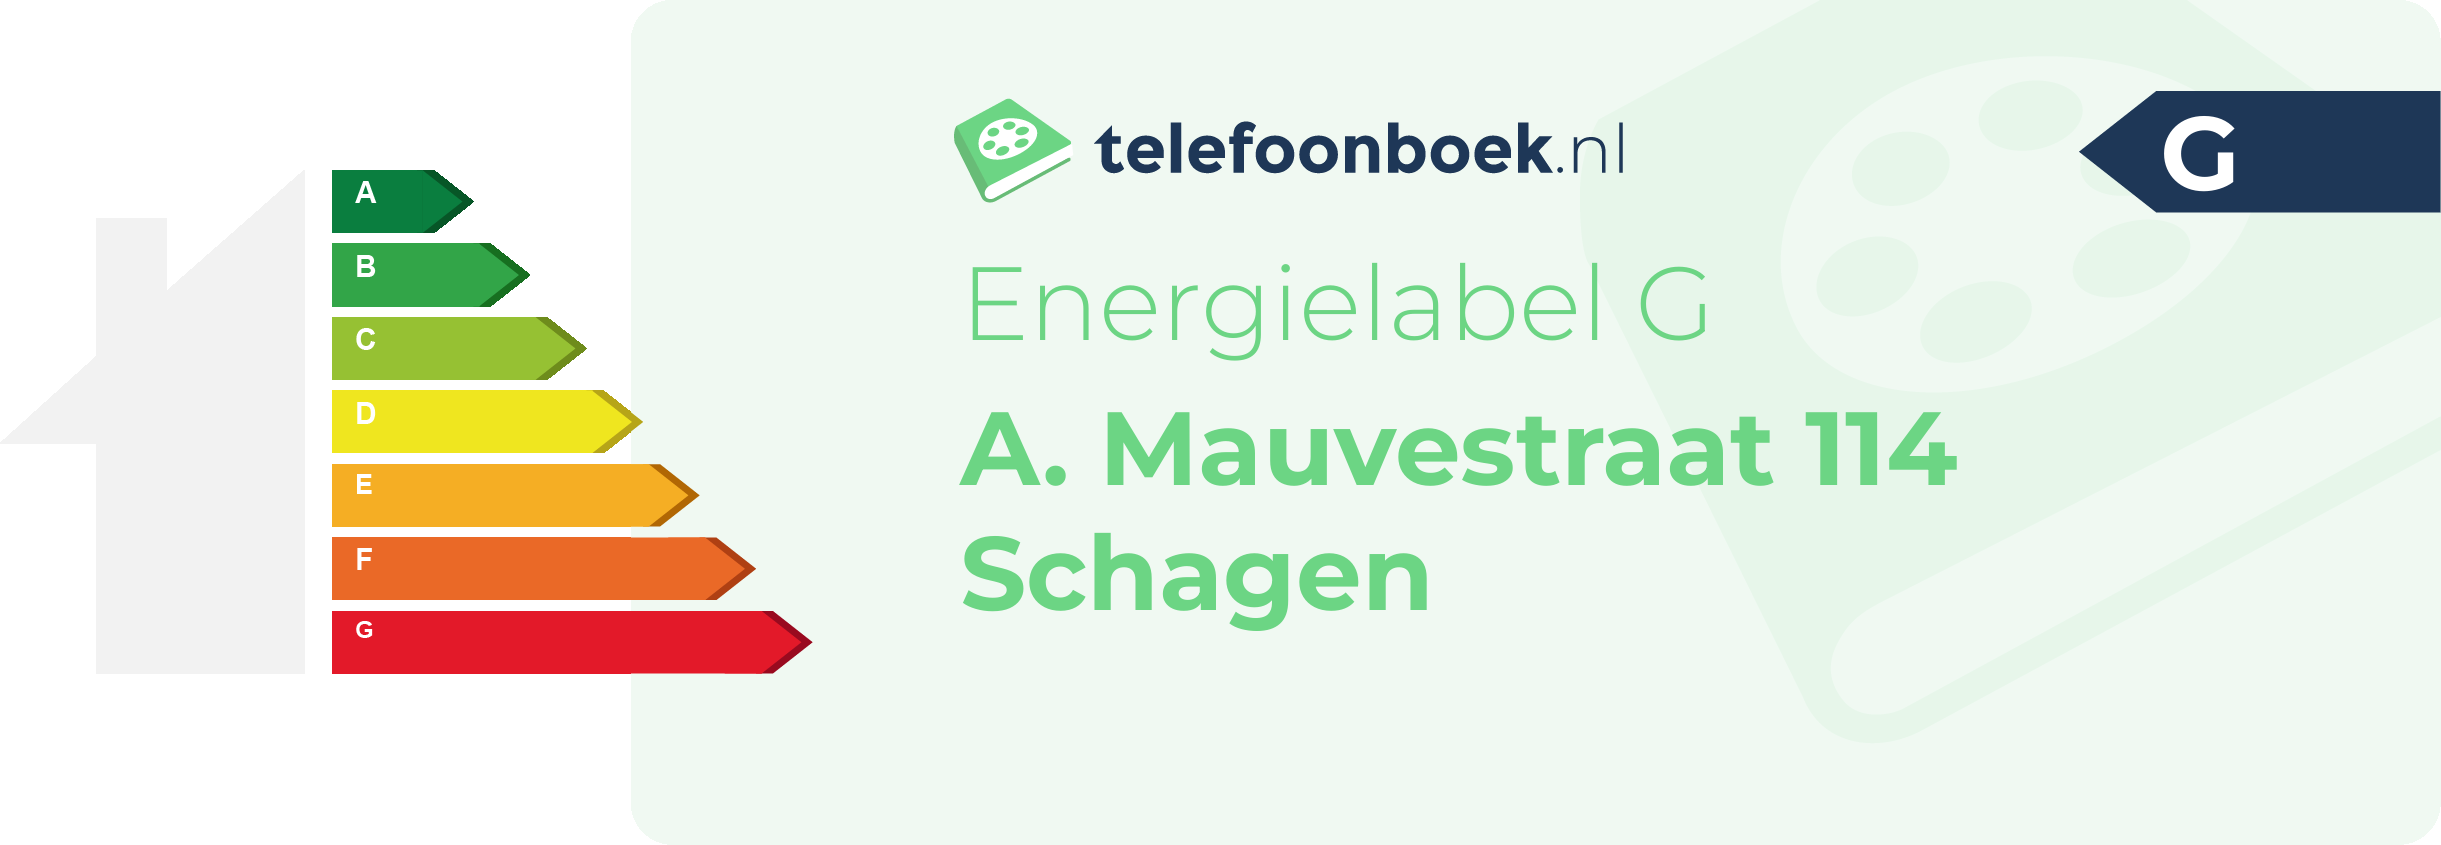 Energielabel A. Mauvestraat 114 Schagen